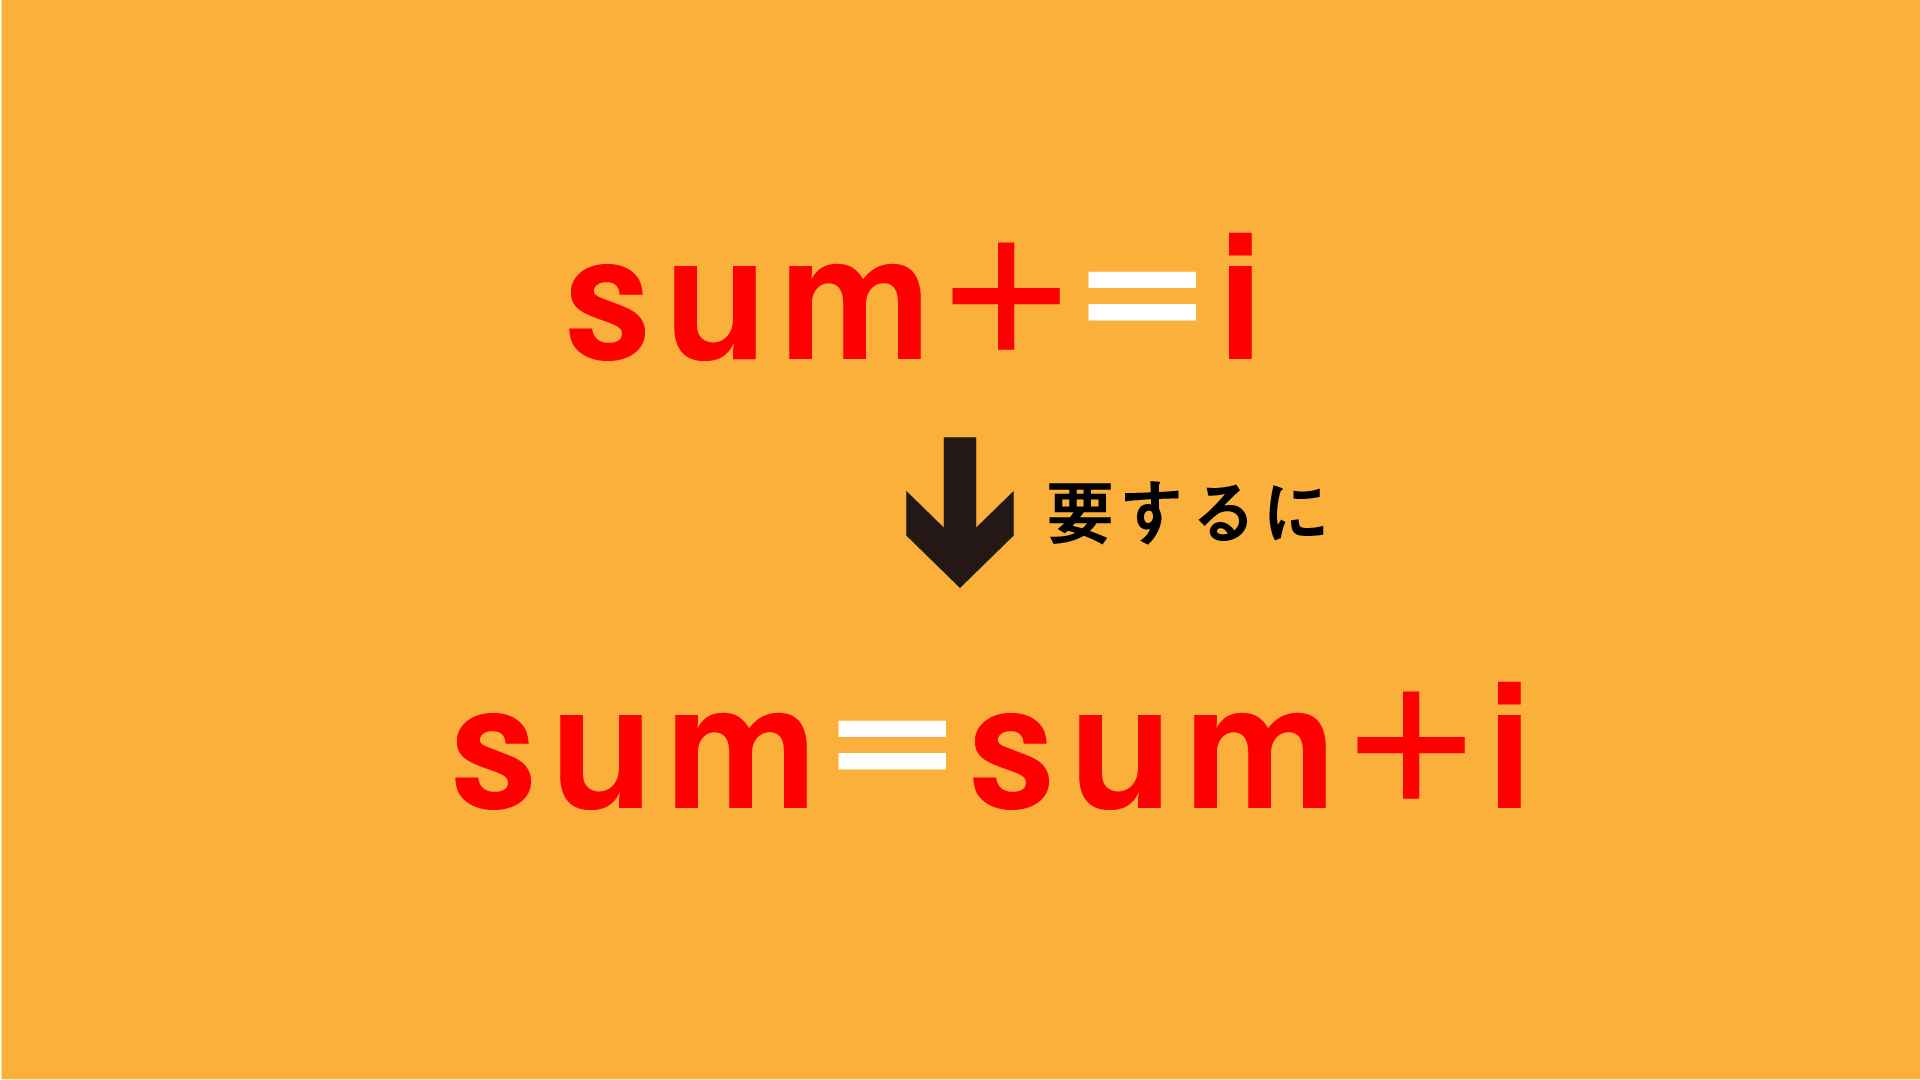 sum+=iの説明